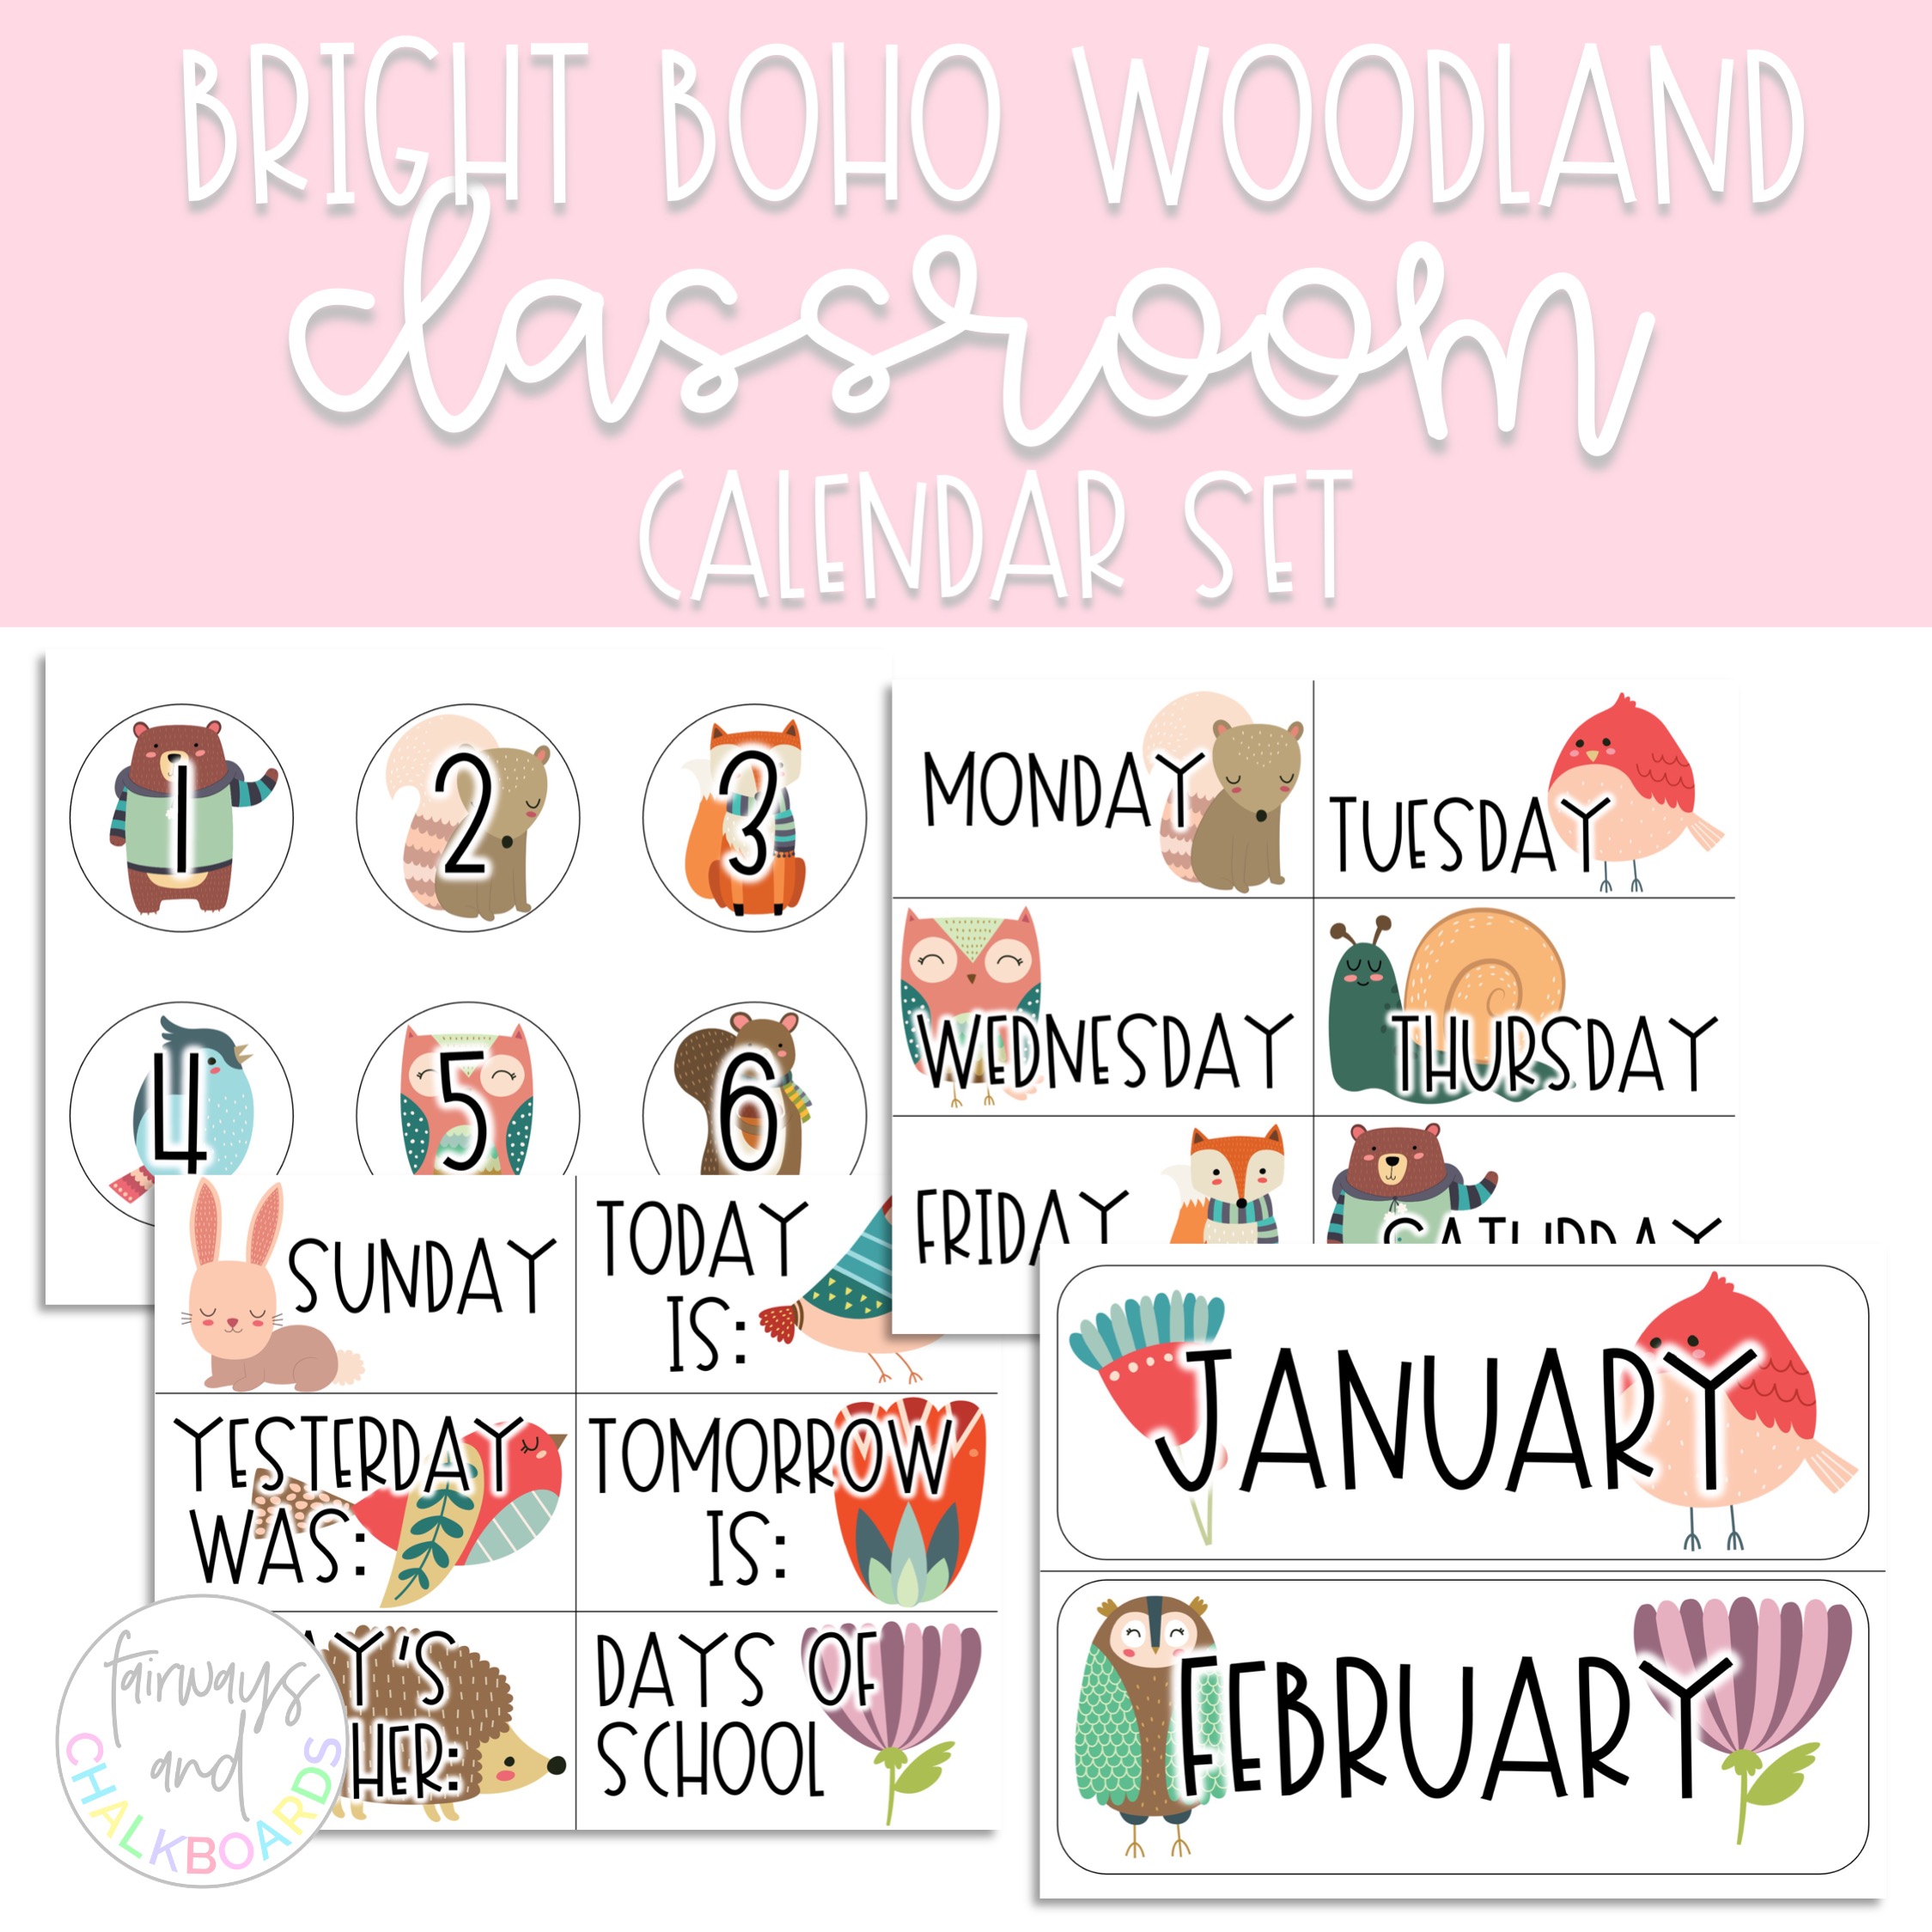 Bright Boho Woodland Classroom Calendar Set